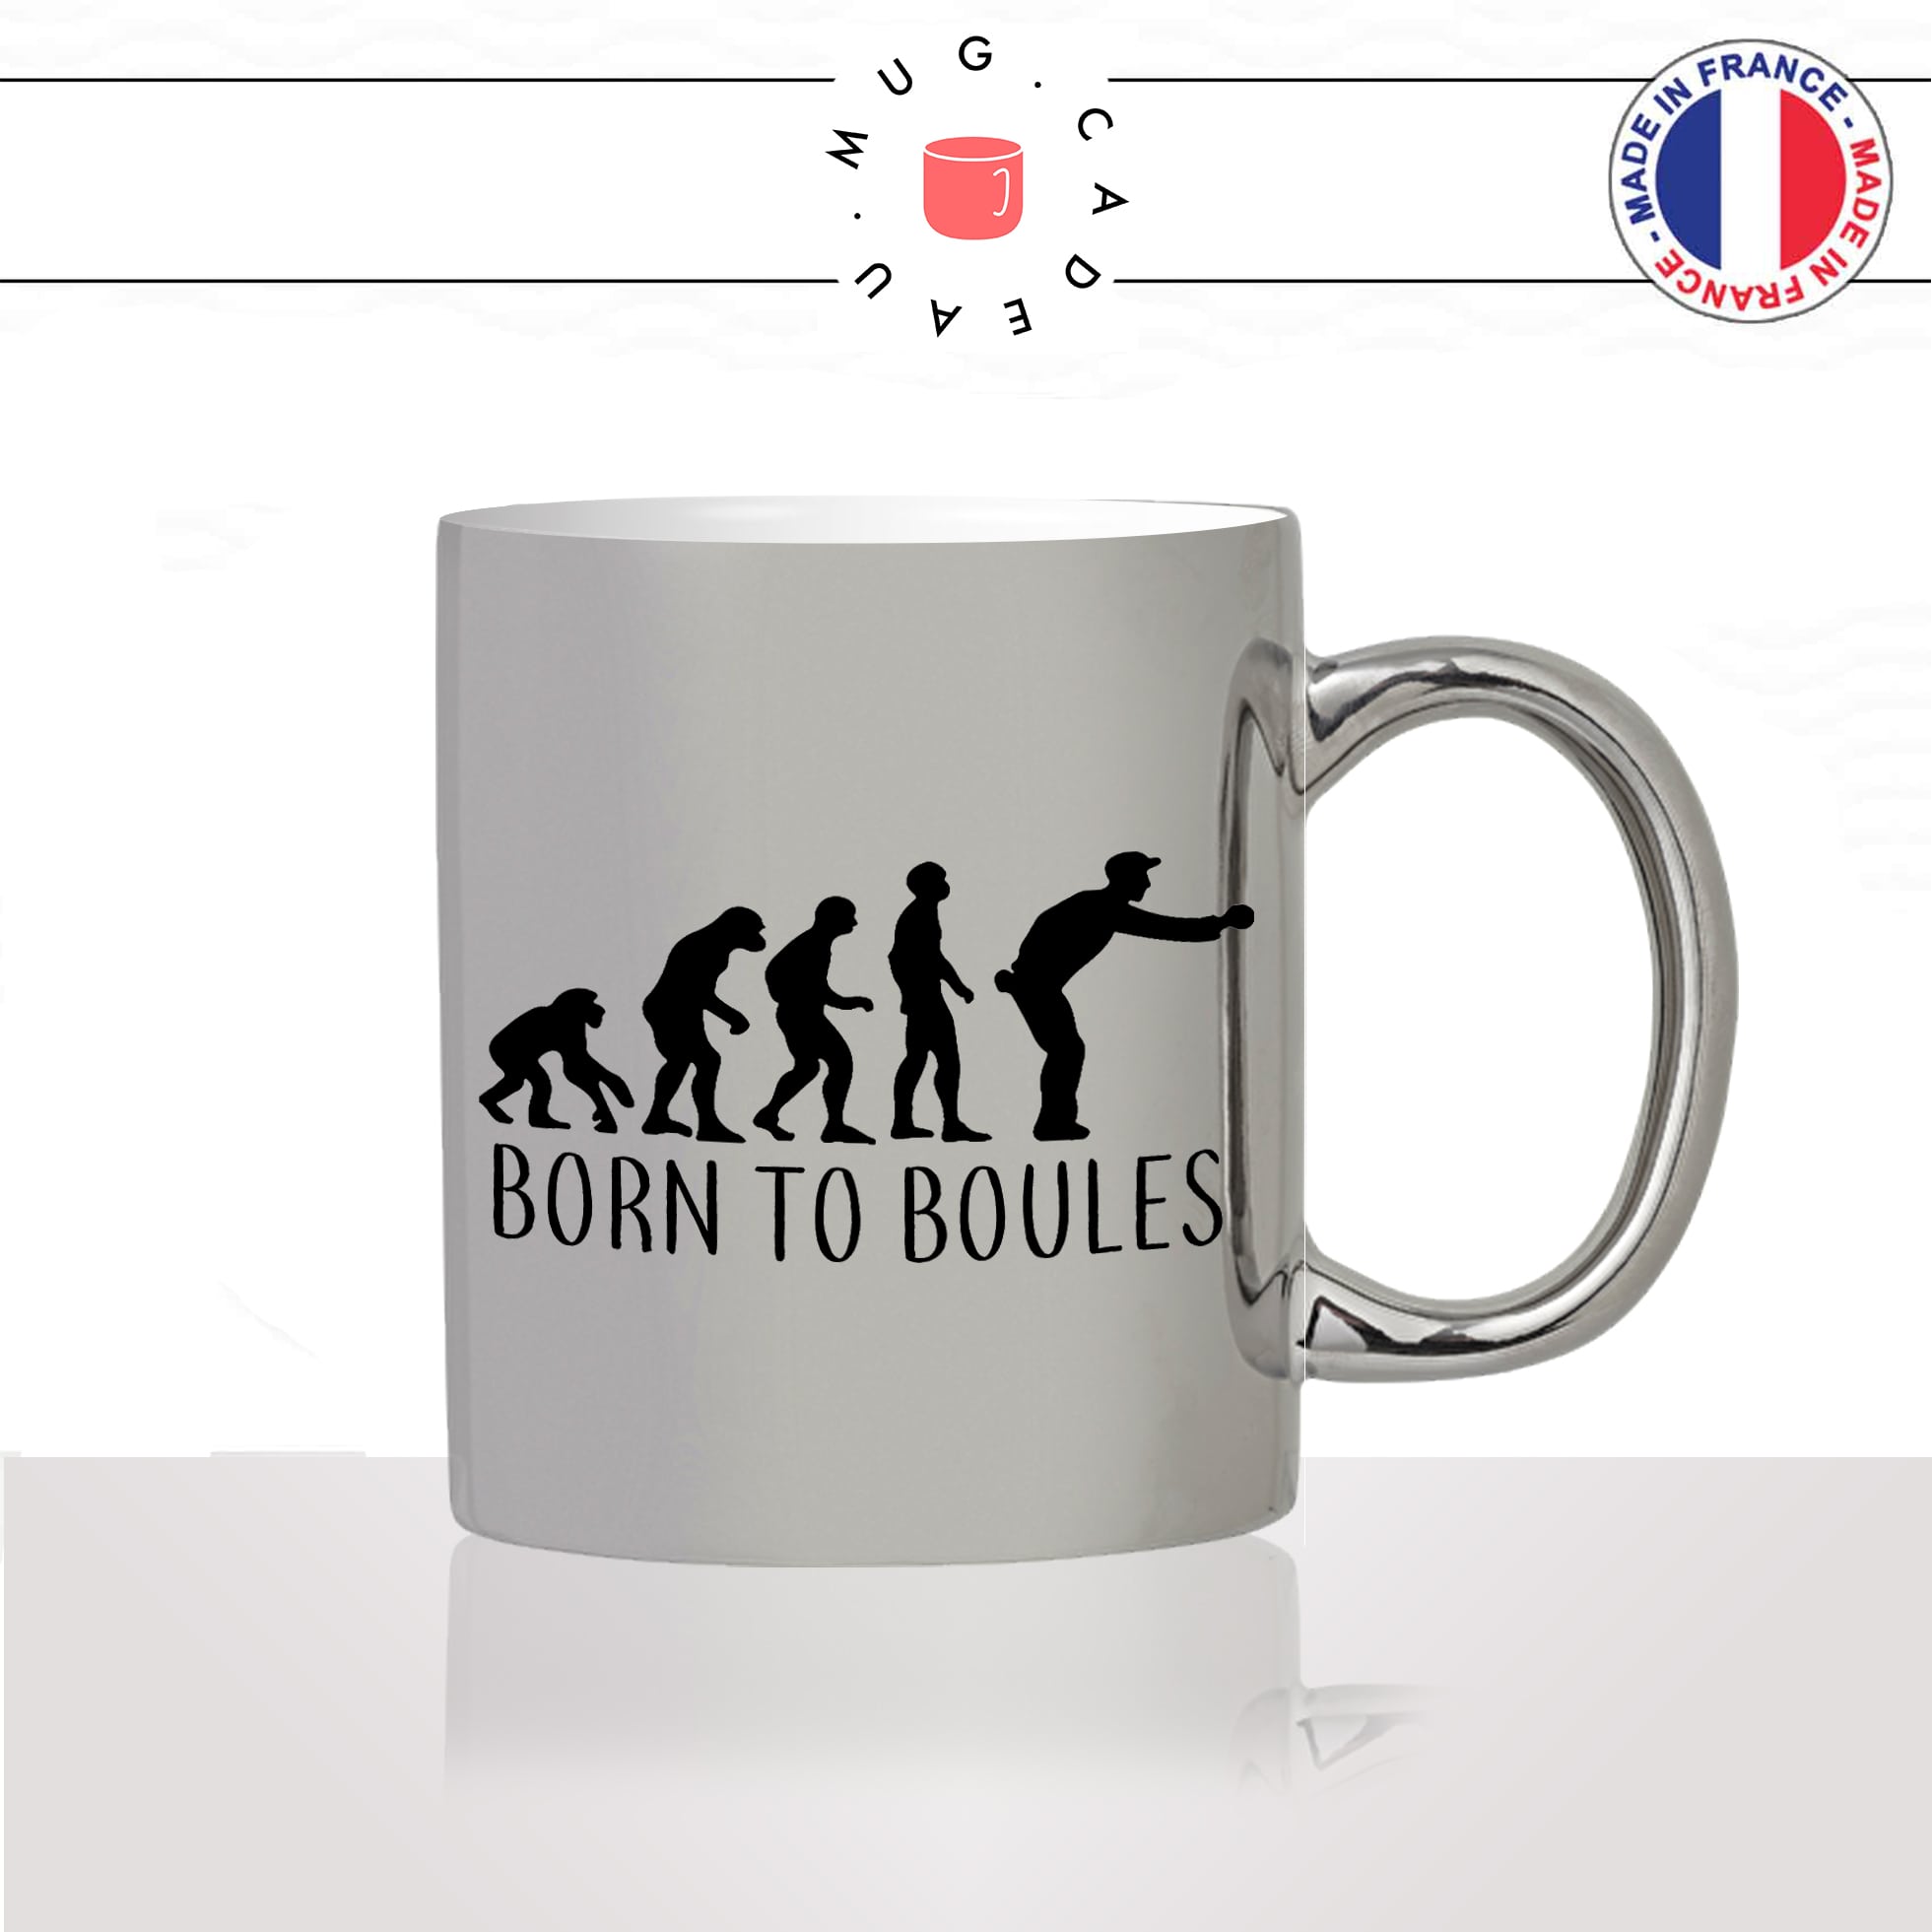 mug-tasse-argent-argenté-silver-born-to-boules-pétanque-evolution-humaine-singe-primate-humour-idée-cadeau-fun-cool-café-thé2-min